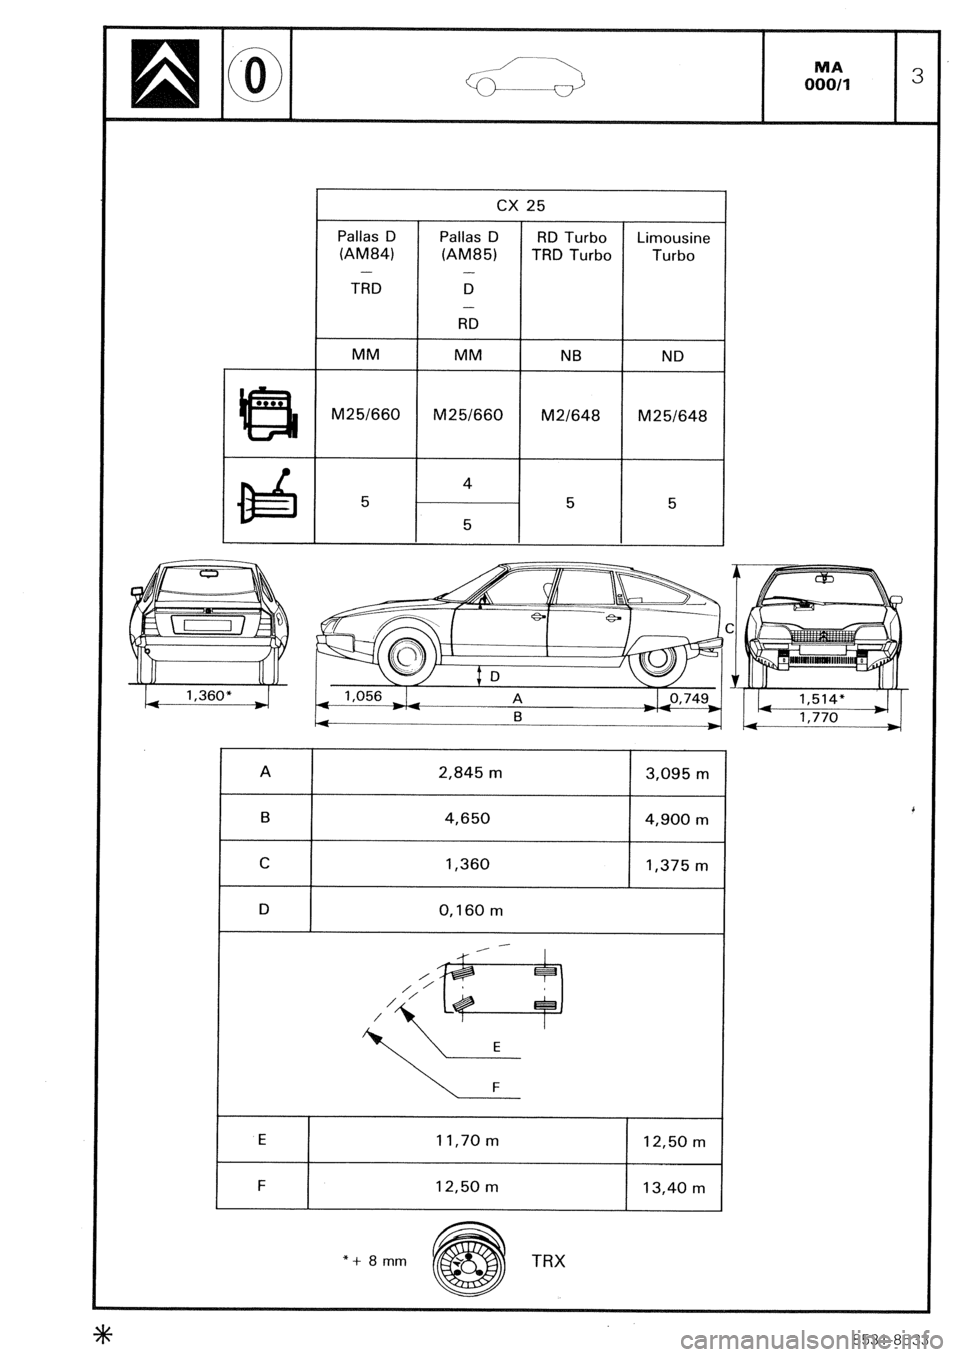 CITROEN CX 1988  Service Manual CX 25 
Pallas D Pallas D RD Turbo Limousine 
(AM84) 
(AM85) TRD Turbo Turbo 
- 
- 
TRD D 
- 
RD 
MM MM NB ND 
M25/660 
M25/660 M2/648 M25/648 
4 
I 5 5 5 
5 
A 2,845 m 3,095 m 
B 4,650 4,900 m 
C 1,36